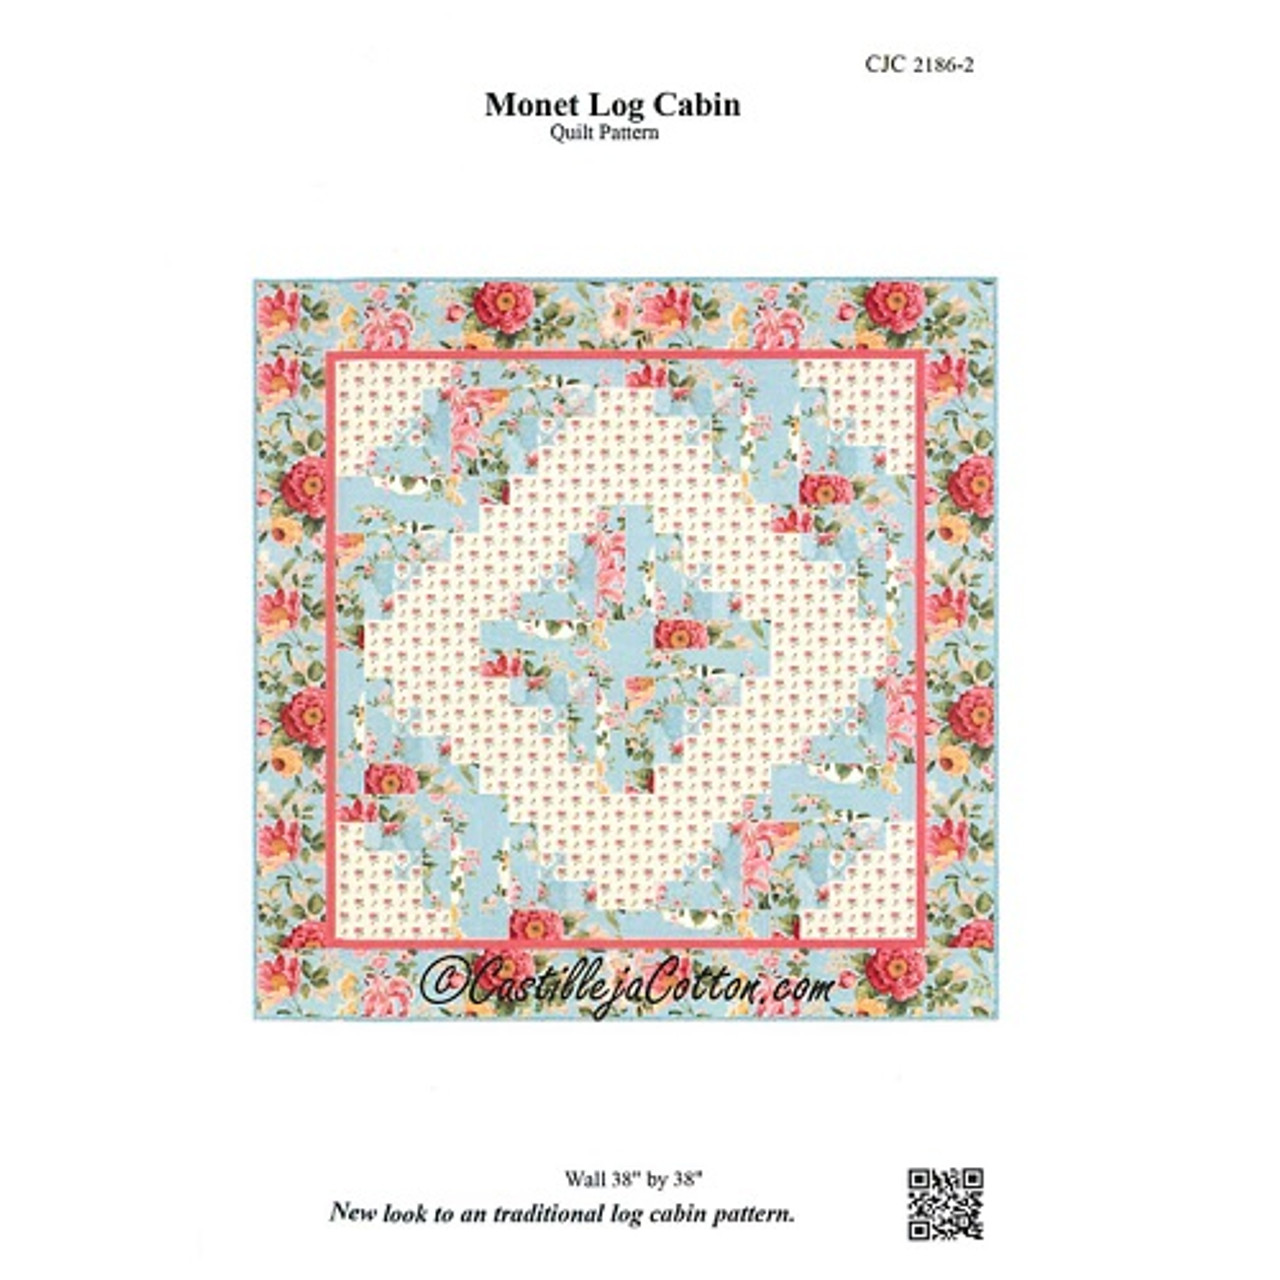 Monet Log Cabin - Castilleja Cotton - Pattern